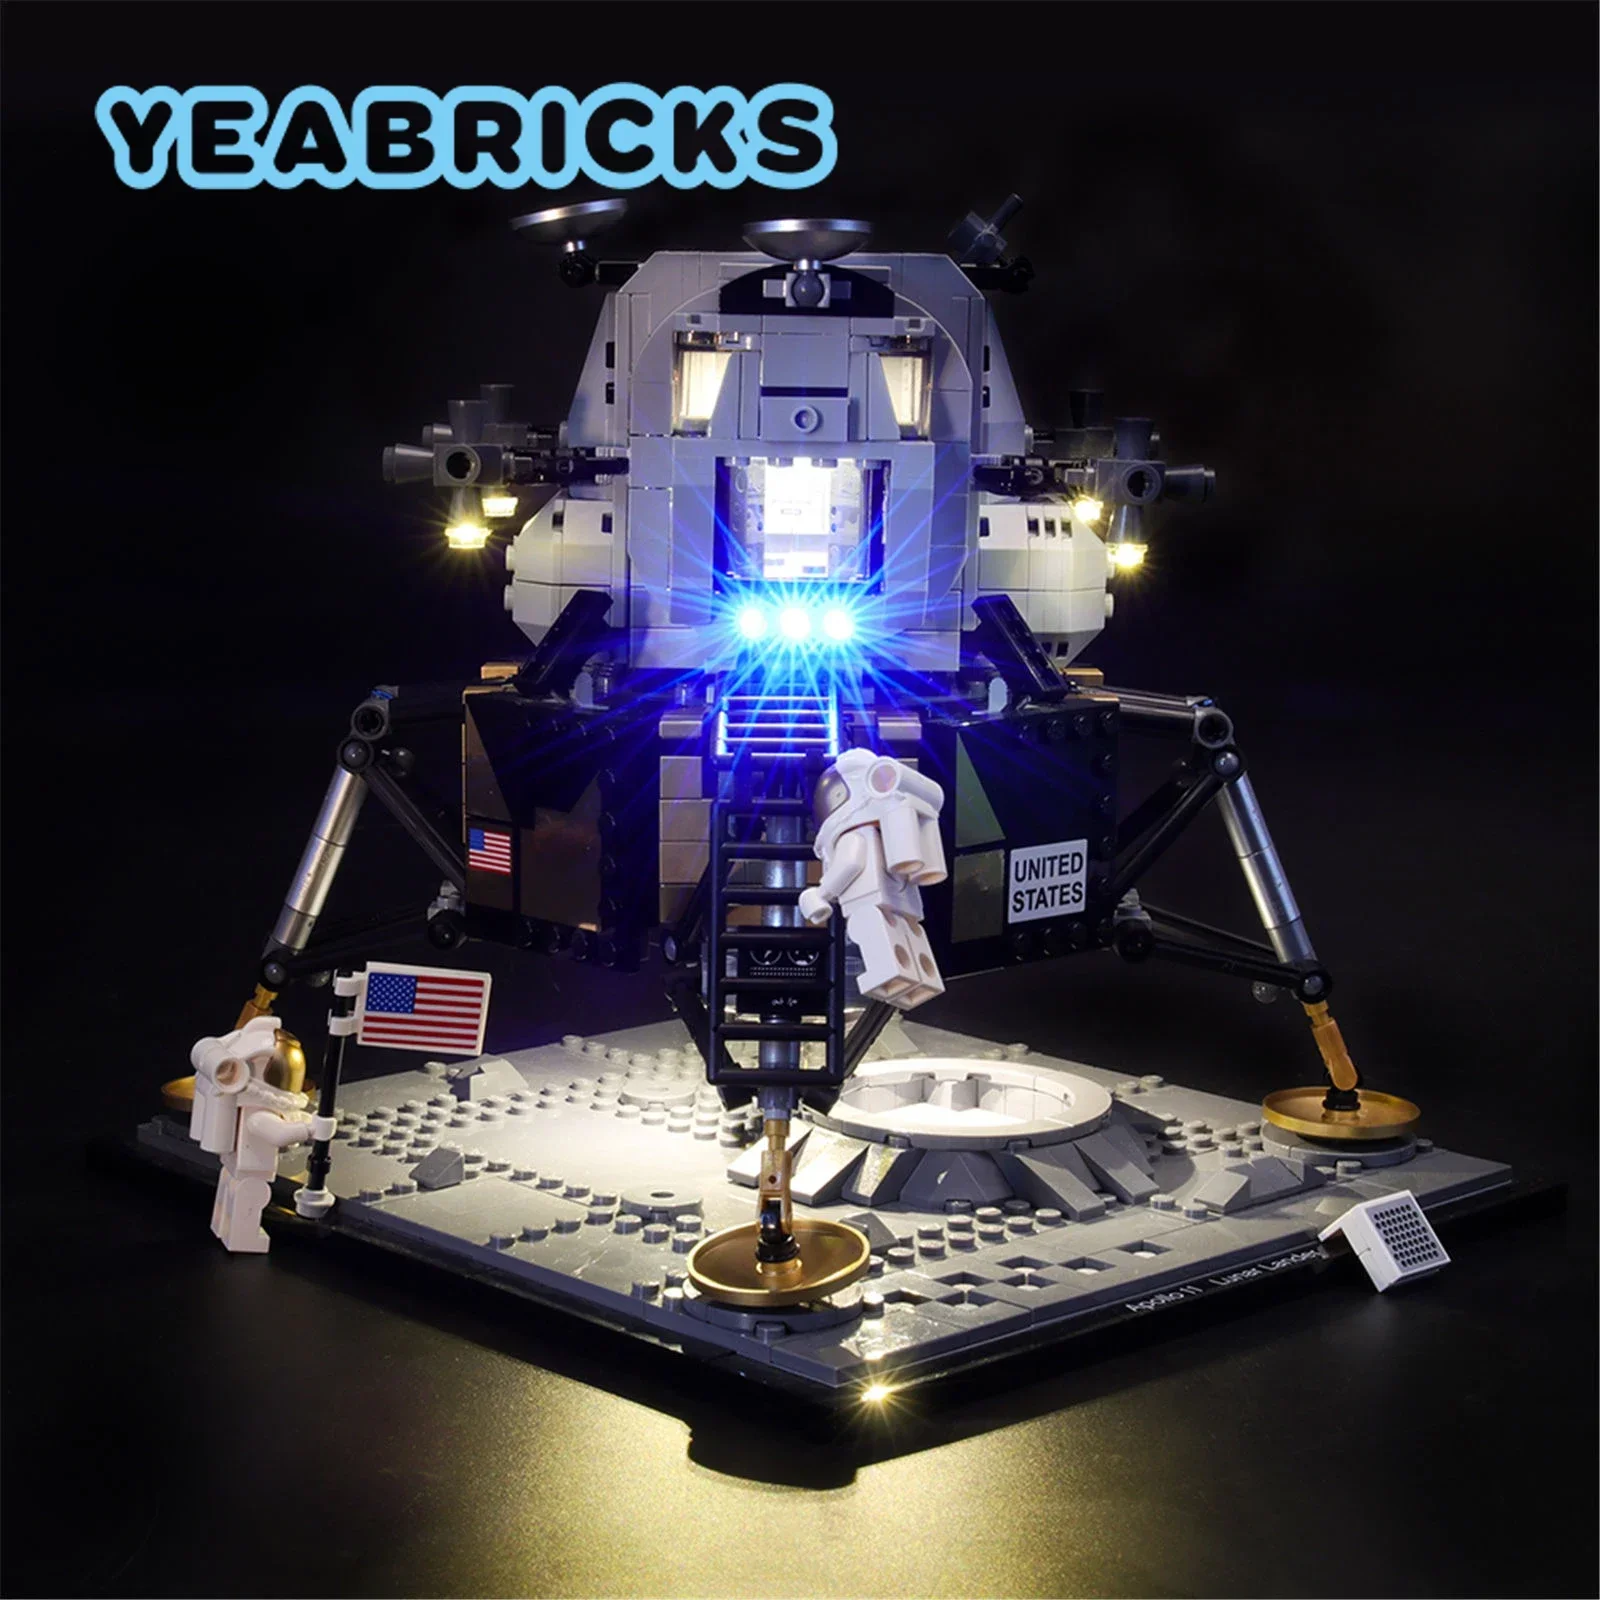 

Детский конструктор YEABRICKS со светодиодной лампой, набор строительных блоков для модели 10266 Apollo 11 Moon Lander (не входит в комплект), игрушки для детей